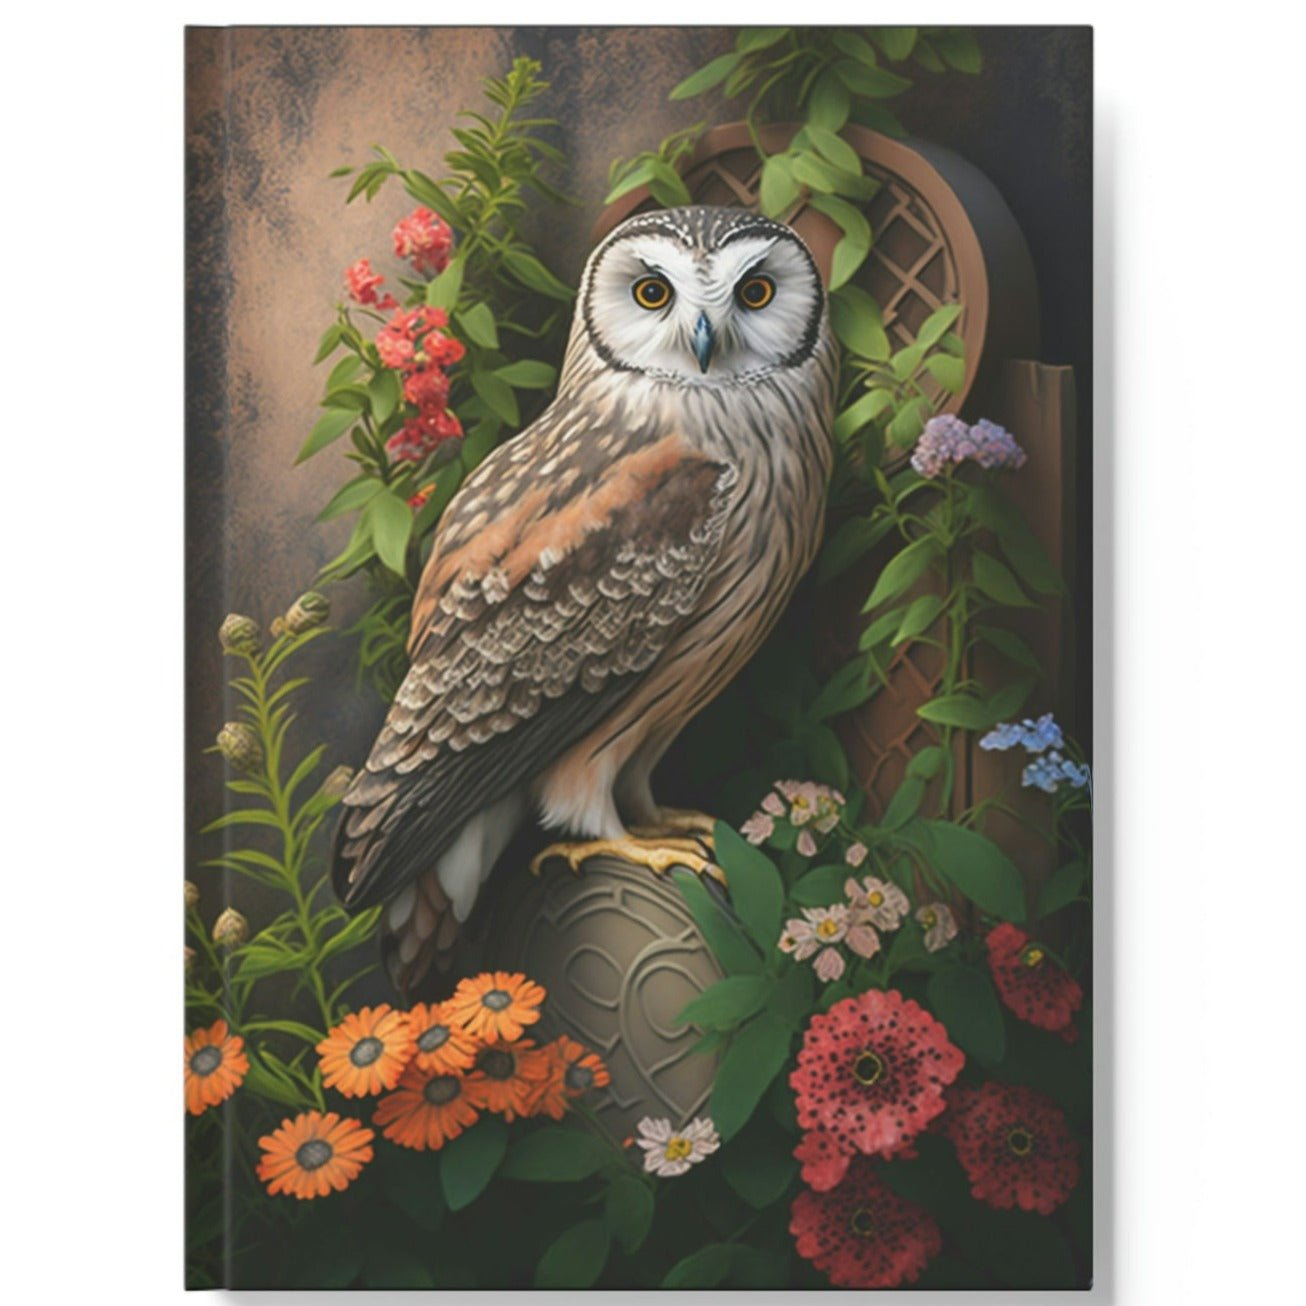 Owl Inspirations - Garden Owl - Hard Backed Journal